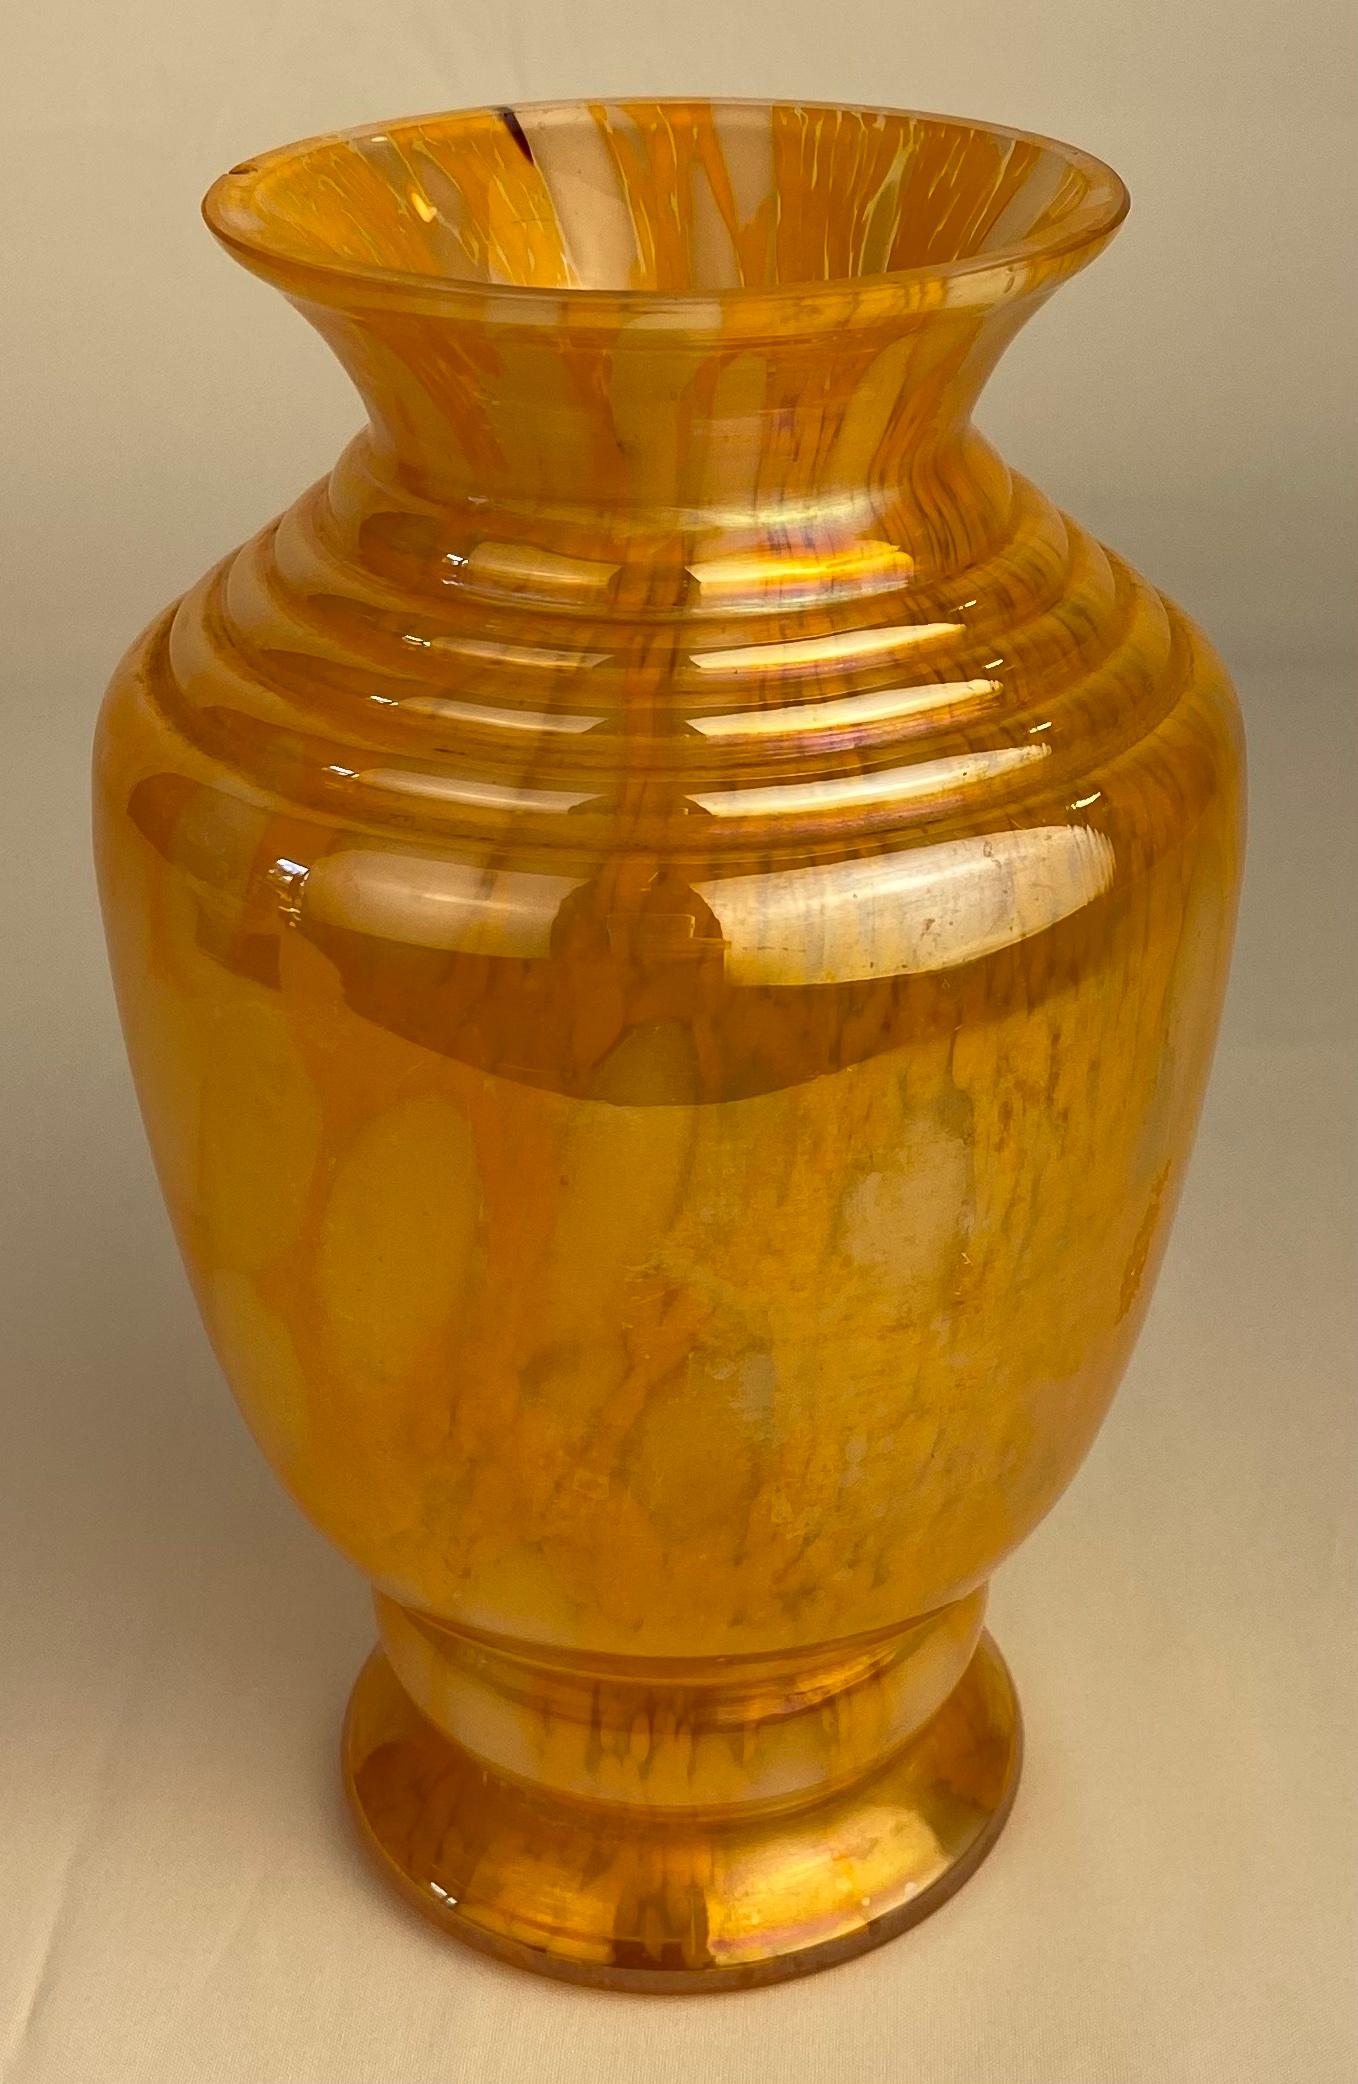 Un vase en verre d'art de Murano de belle qualité, de couleur ambrée, parfait pour exposer vos fleurs préférées. 

Très bon état vintage, sans fissures ni éclats. 
Mesures : 7 5/8